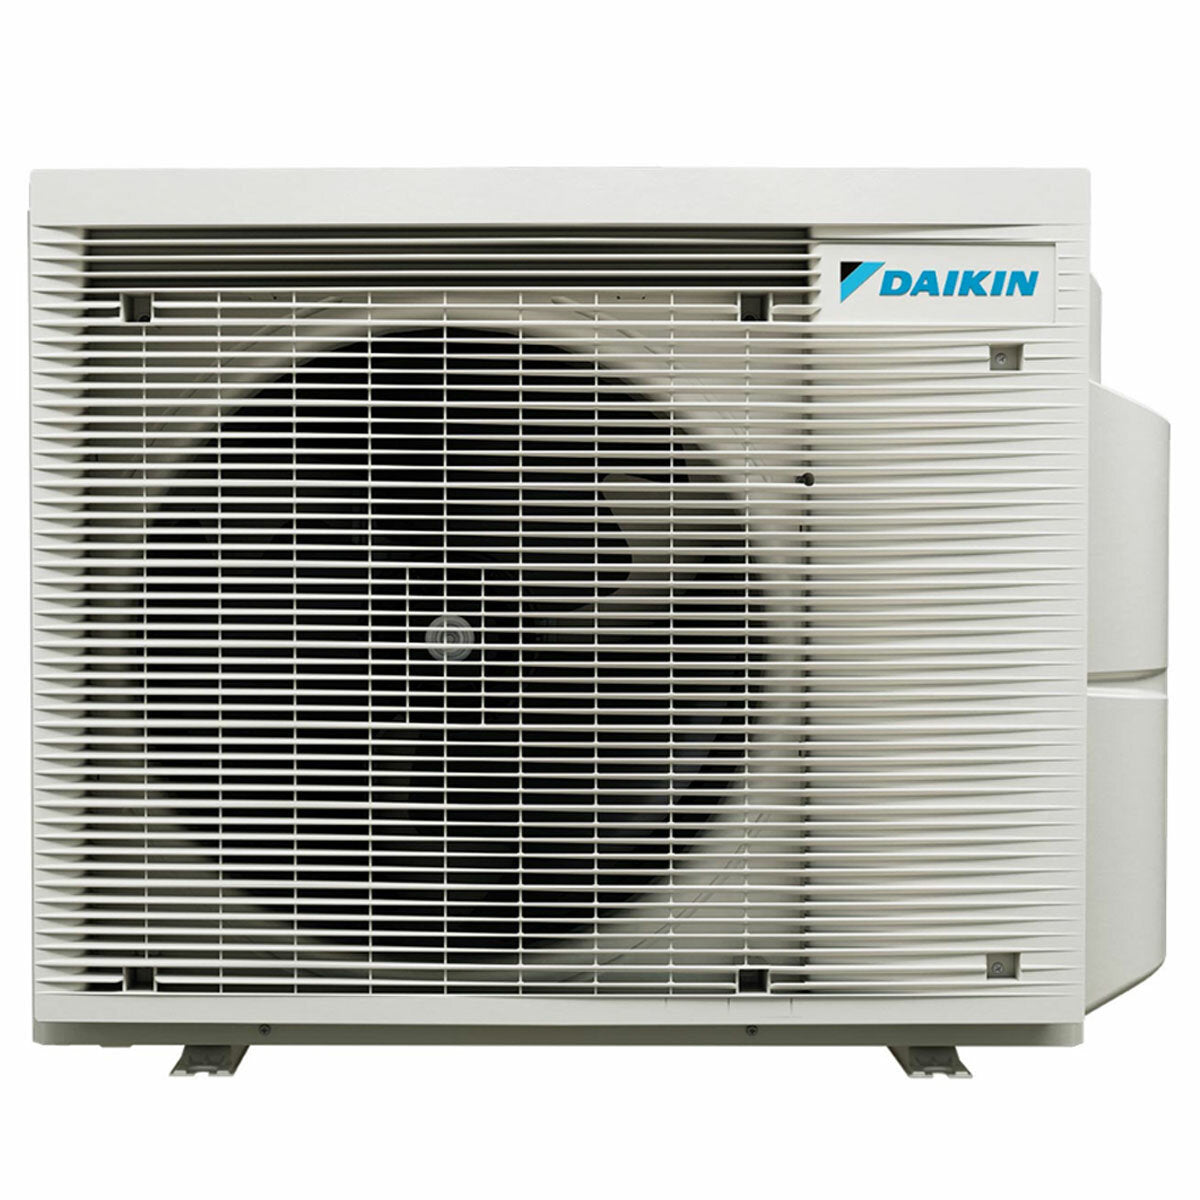 Daikin Stylish White trial split air conditioner 7000+9000+15000 BTU inverter A+++ wifi external unit 5 kW